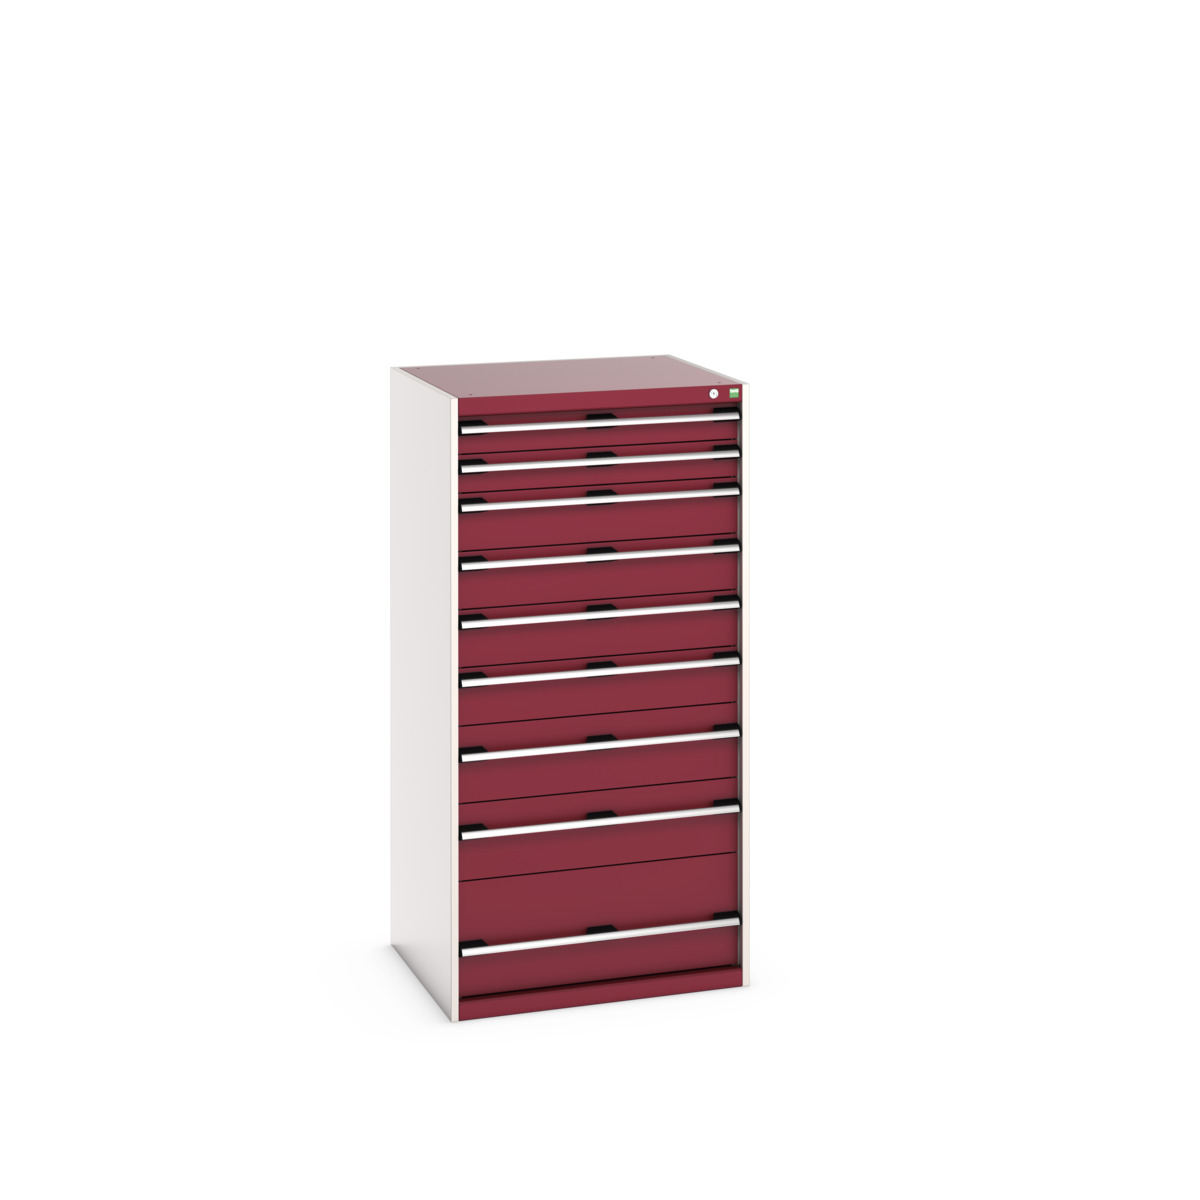 40028040.24V - cubio drawer cabinet